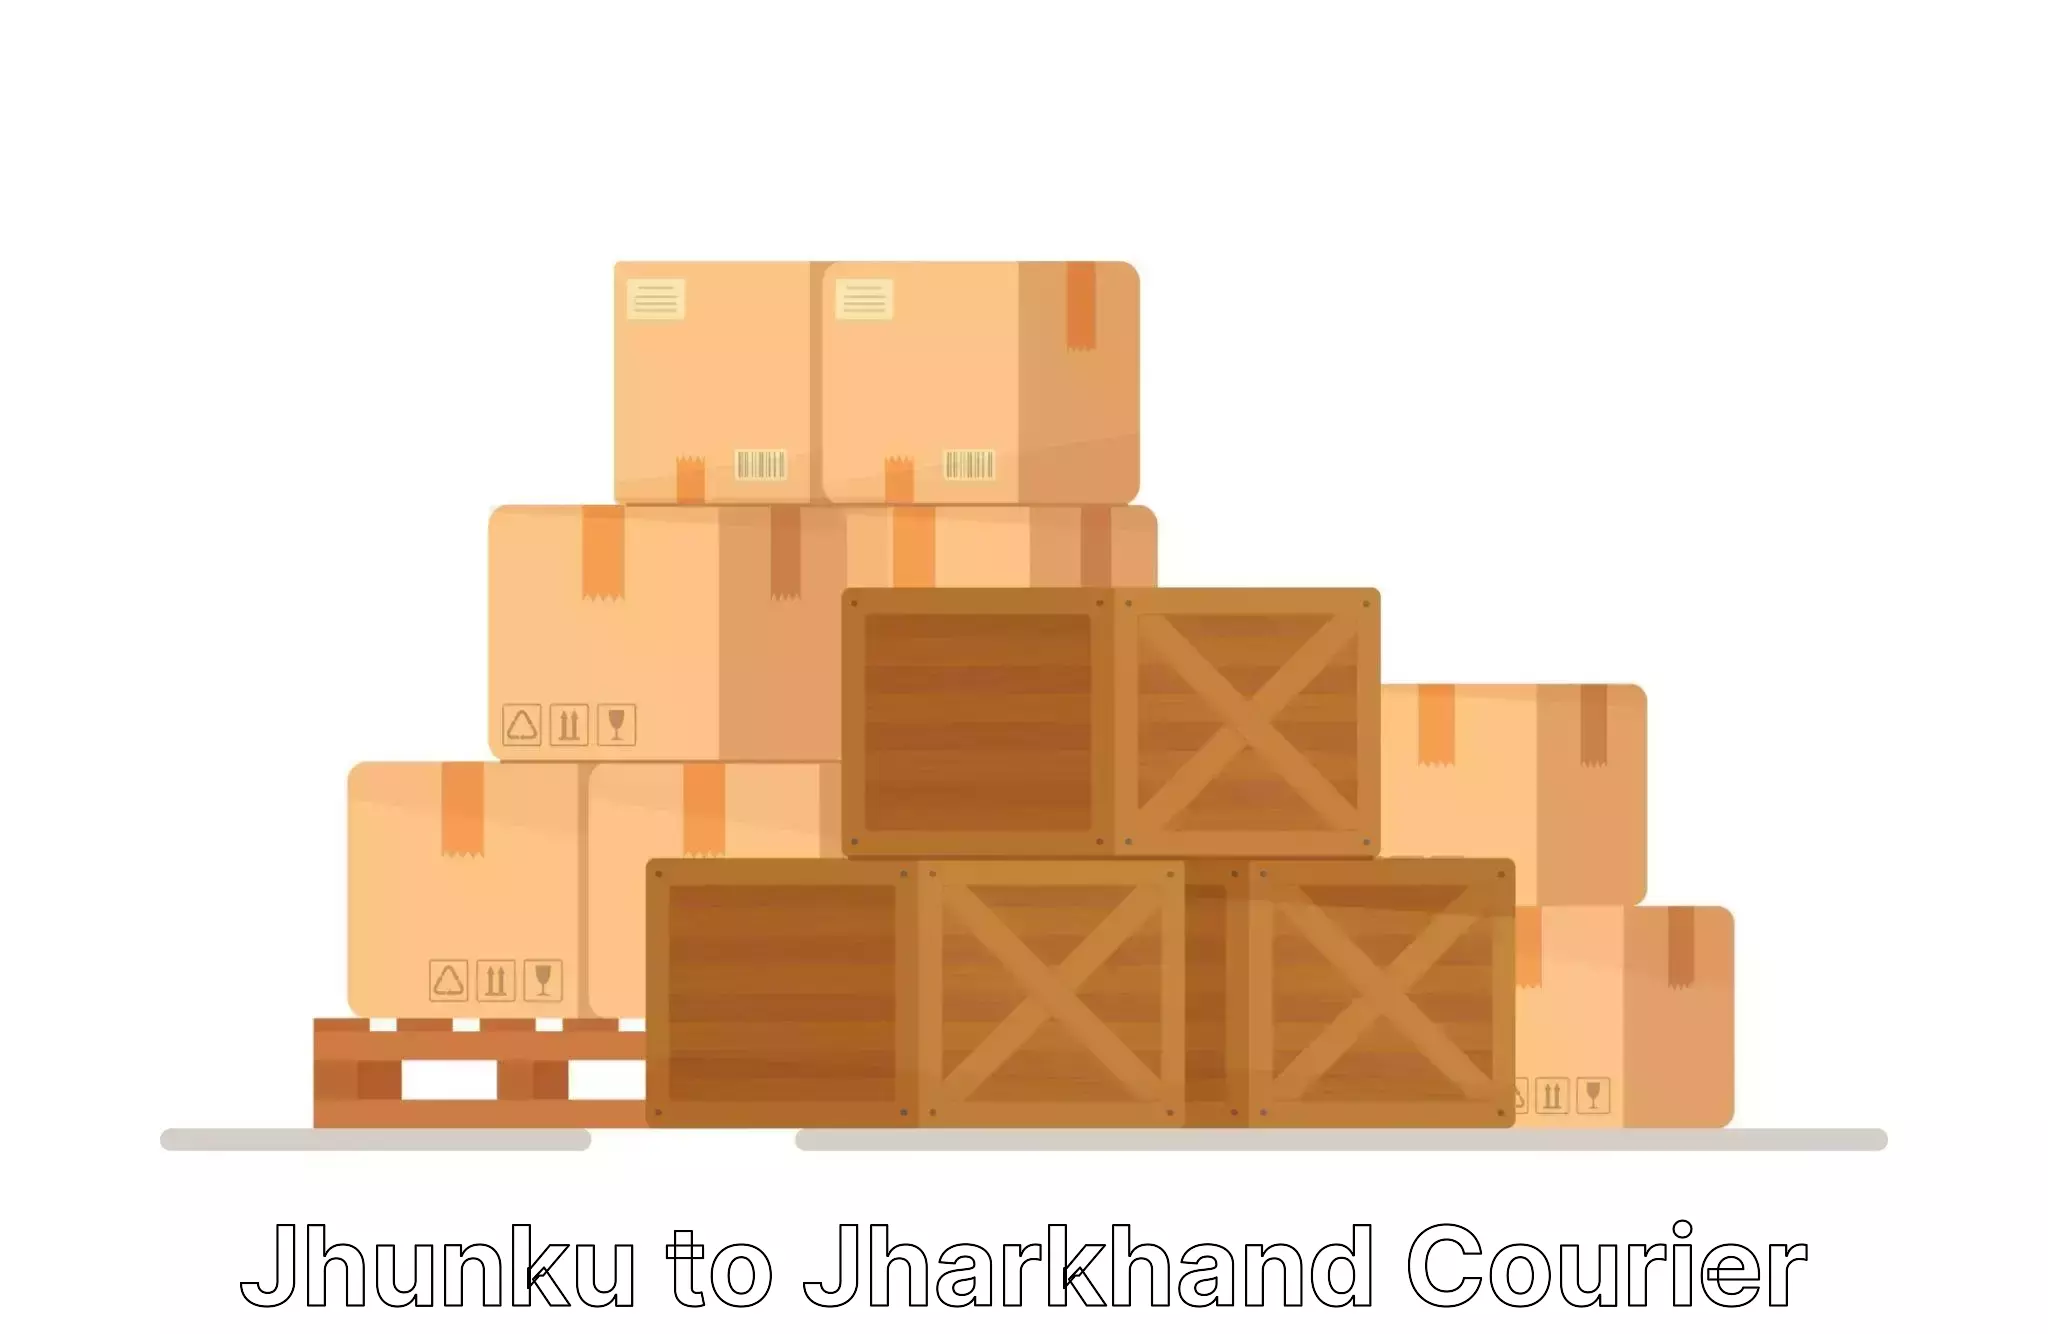 Nationwide household movers Jhunku to Jharkhand